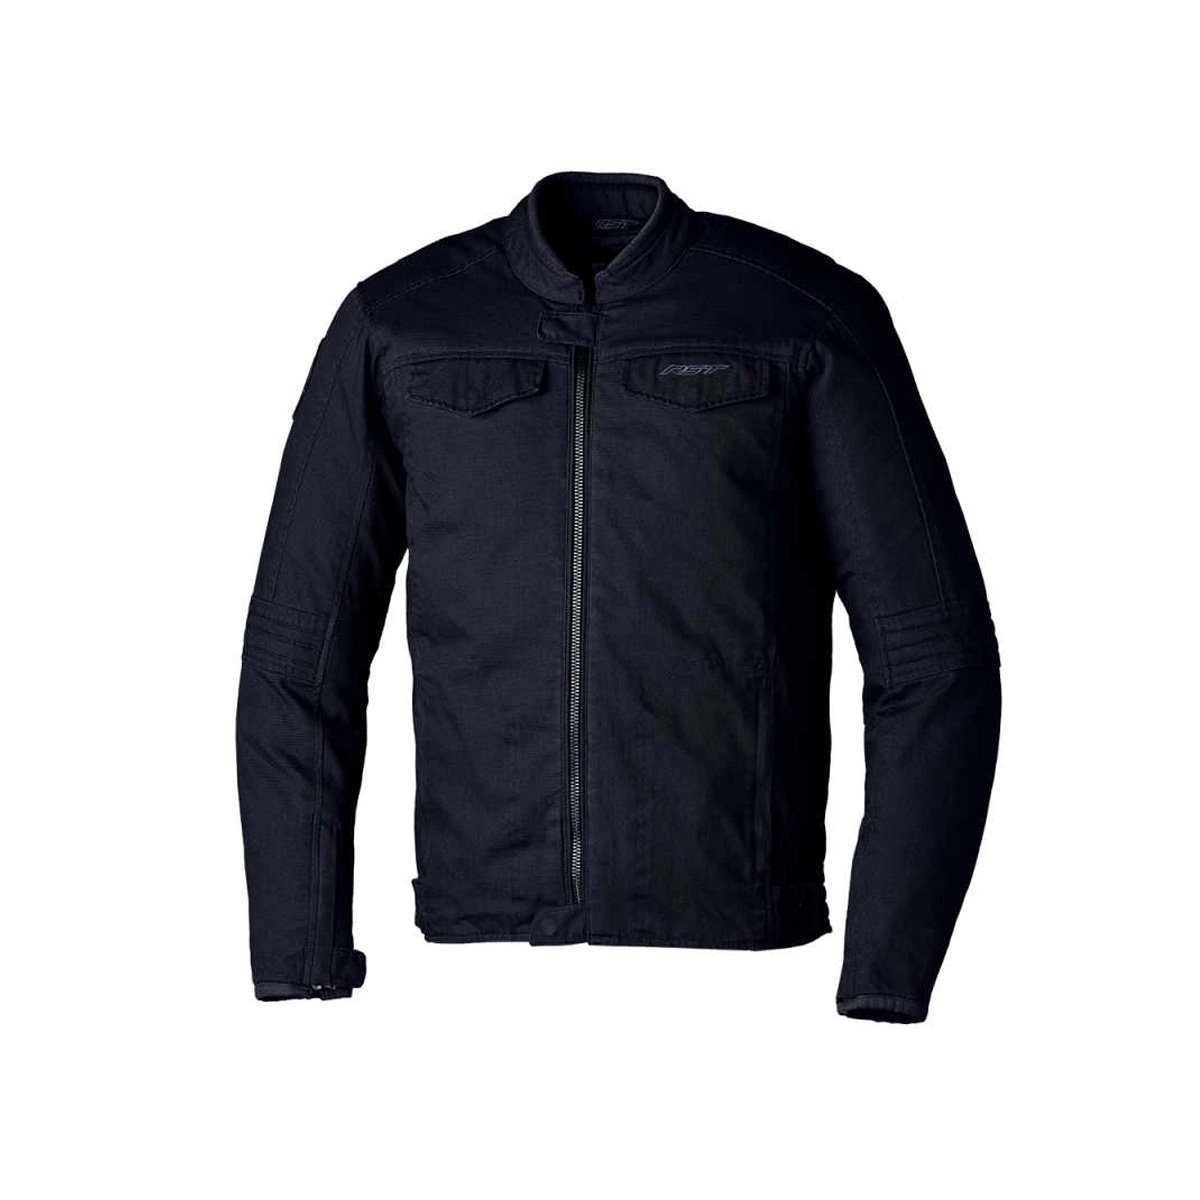 Image of RST IOM TT Crosby 2 CE Textile Jacket Men Black Size 42 EN